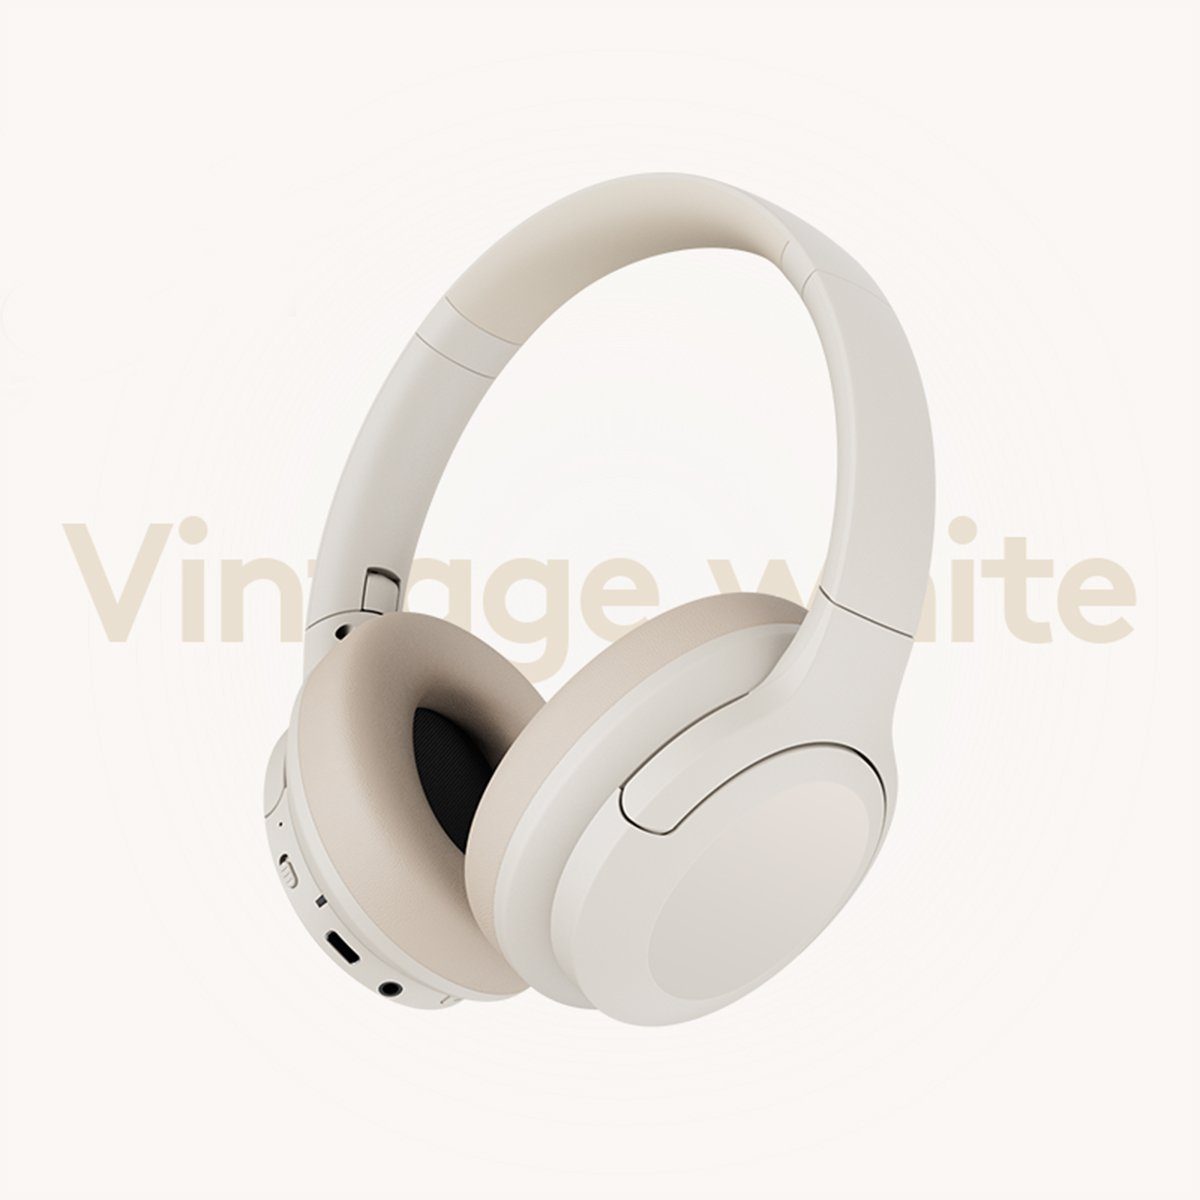 Bluetooth autolock Over-Ear-Kopfhörer Handy/PC/Zuhause) Faltbare Over-Ear-Kopfhörer mit Headset aktivem (Wireless 80 Stereo HiFi Spielzeit Stunden Noise Weiß Kopfhörer,für